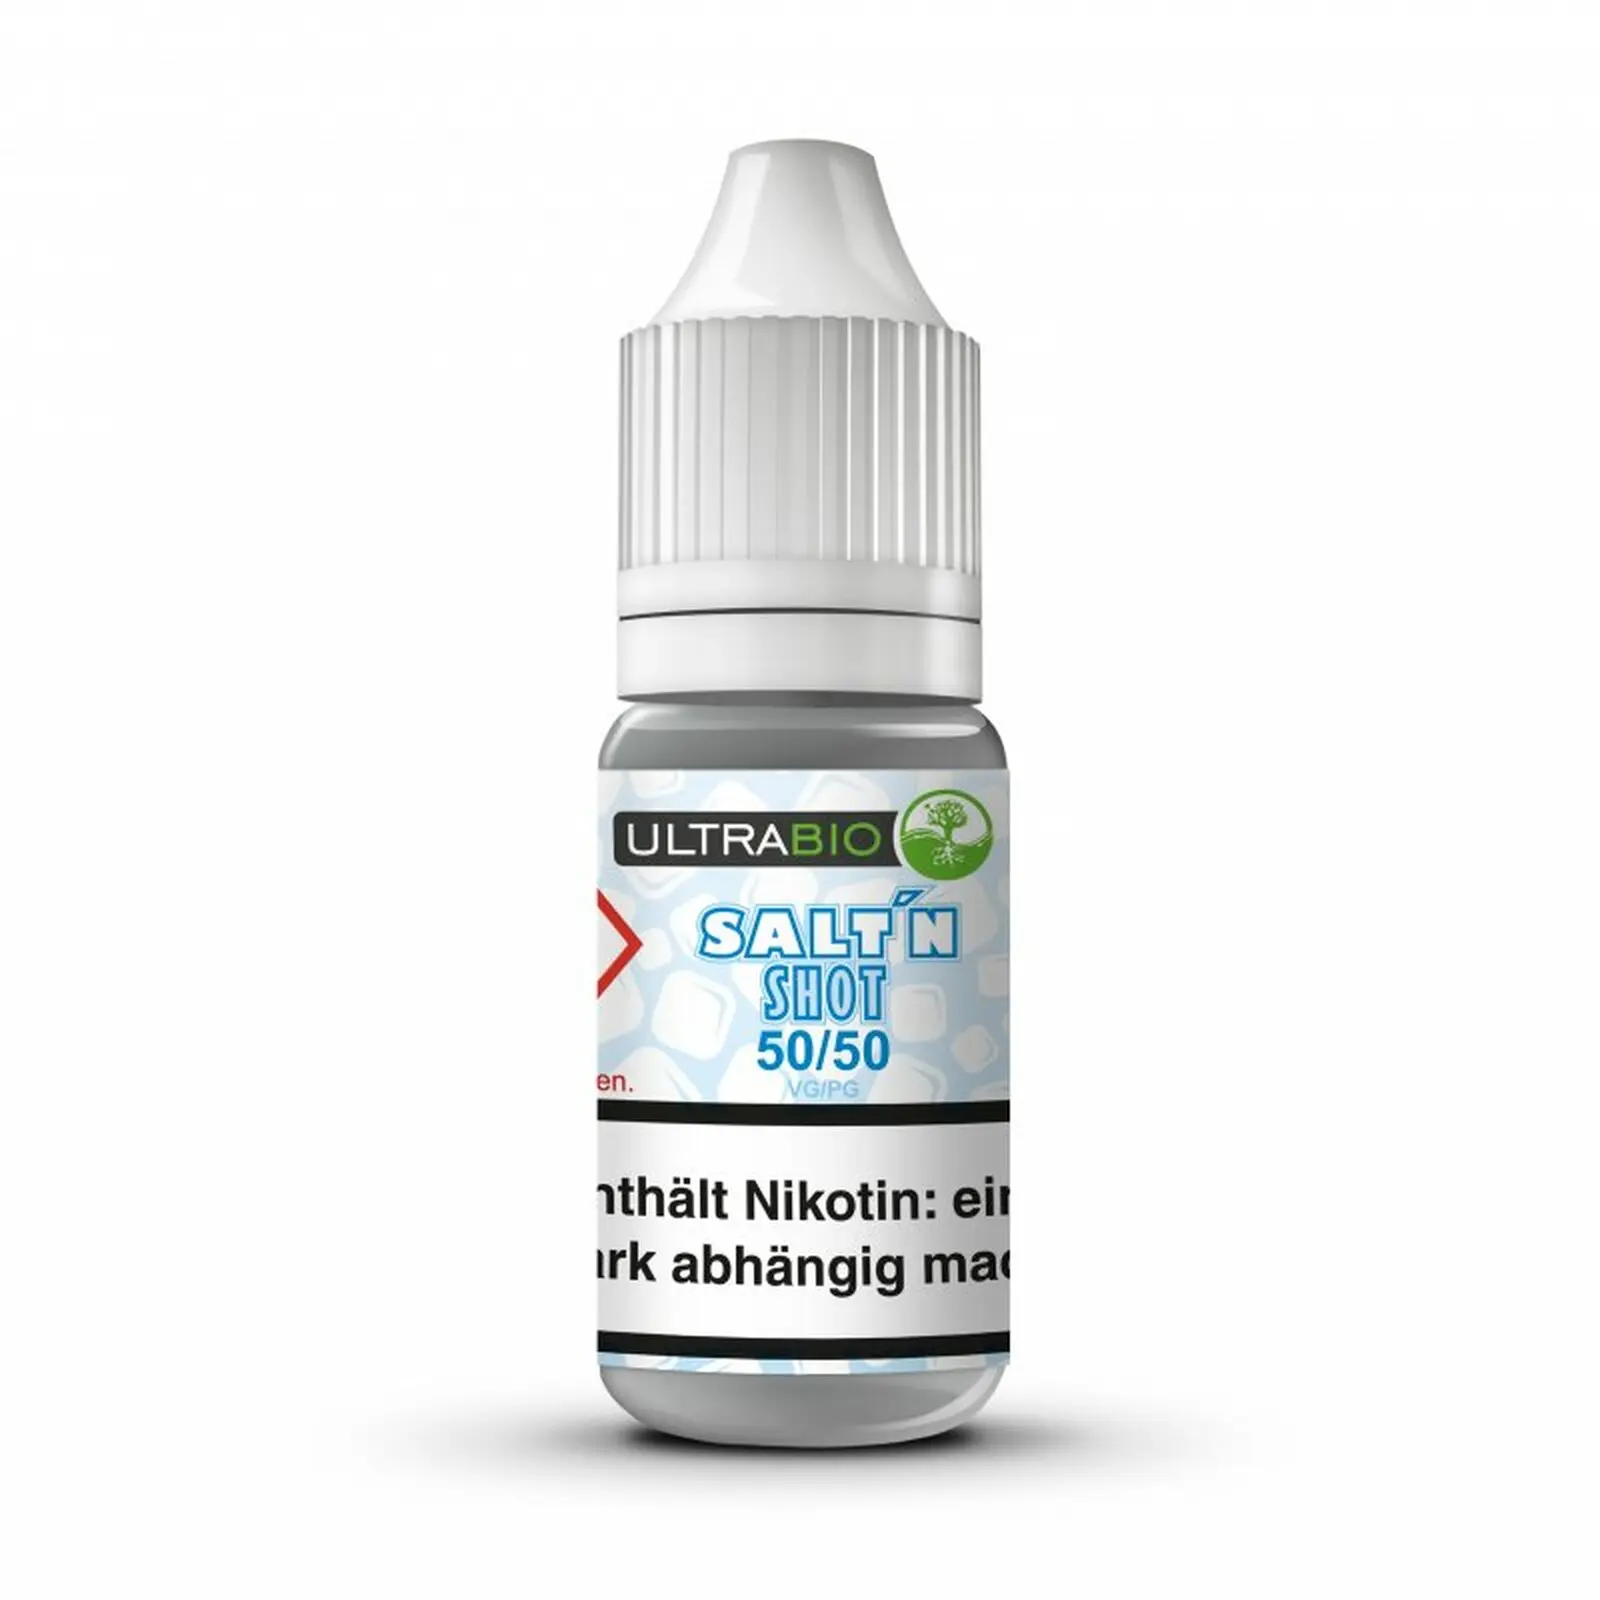 Ultrabio Nikotin Salz Shot 50PG/50VG 20mg/ml